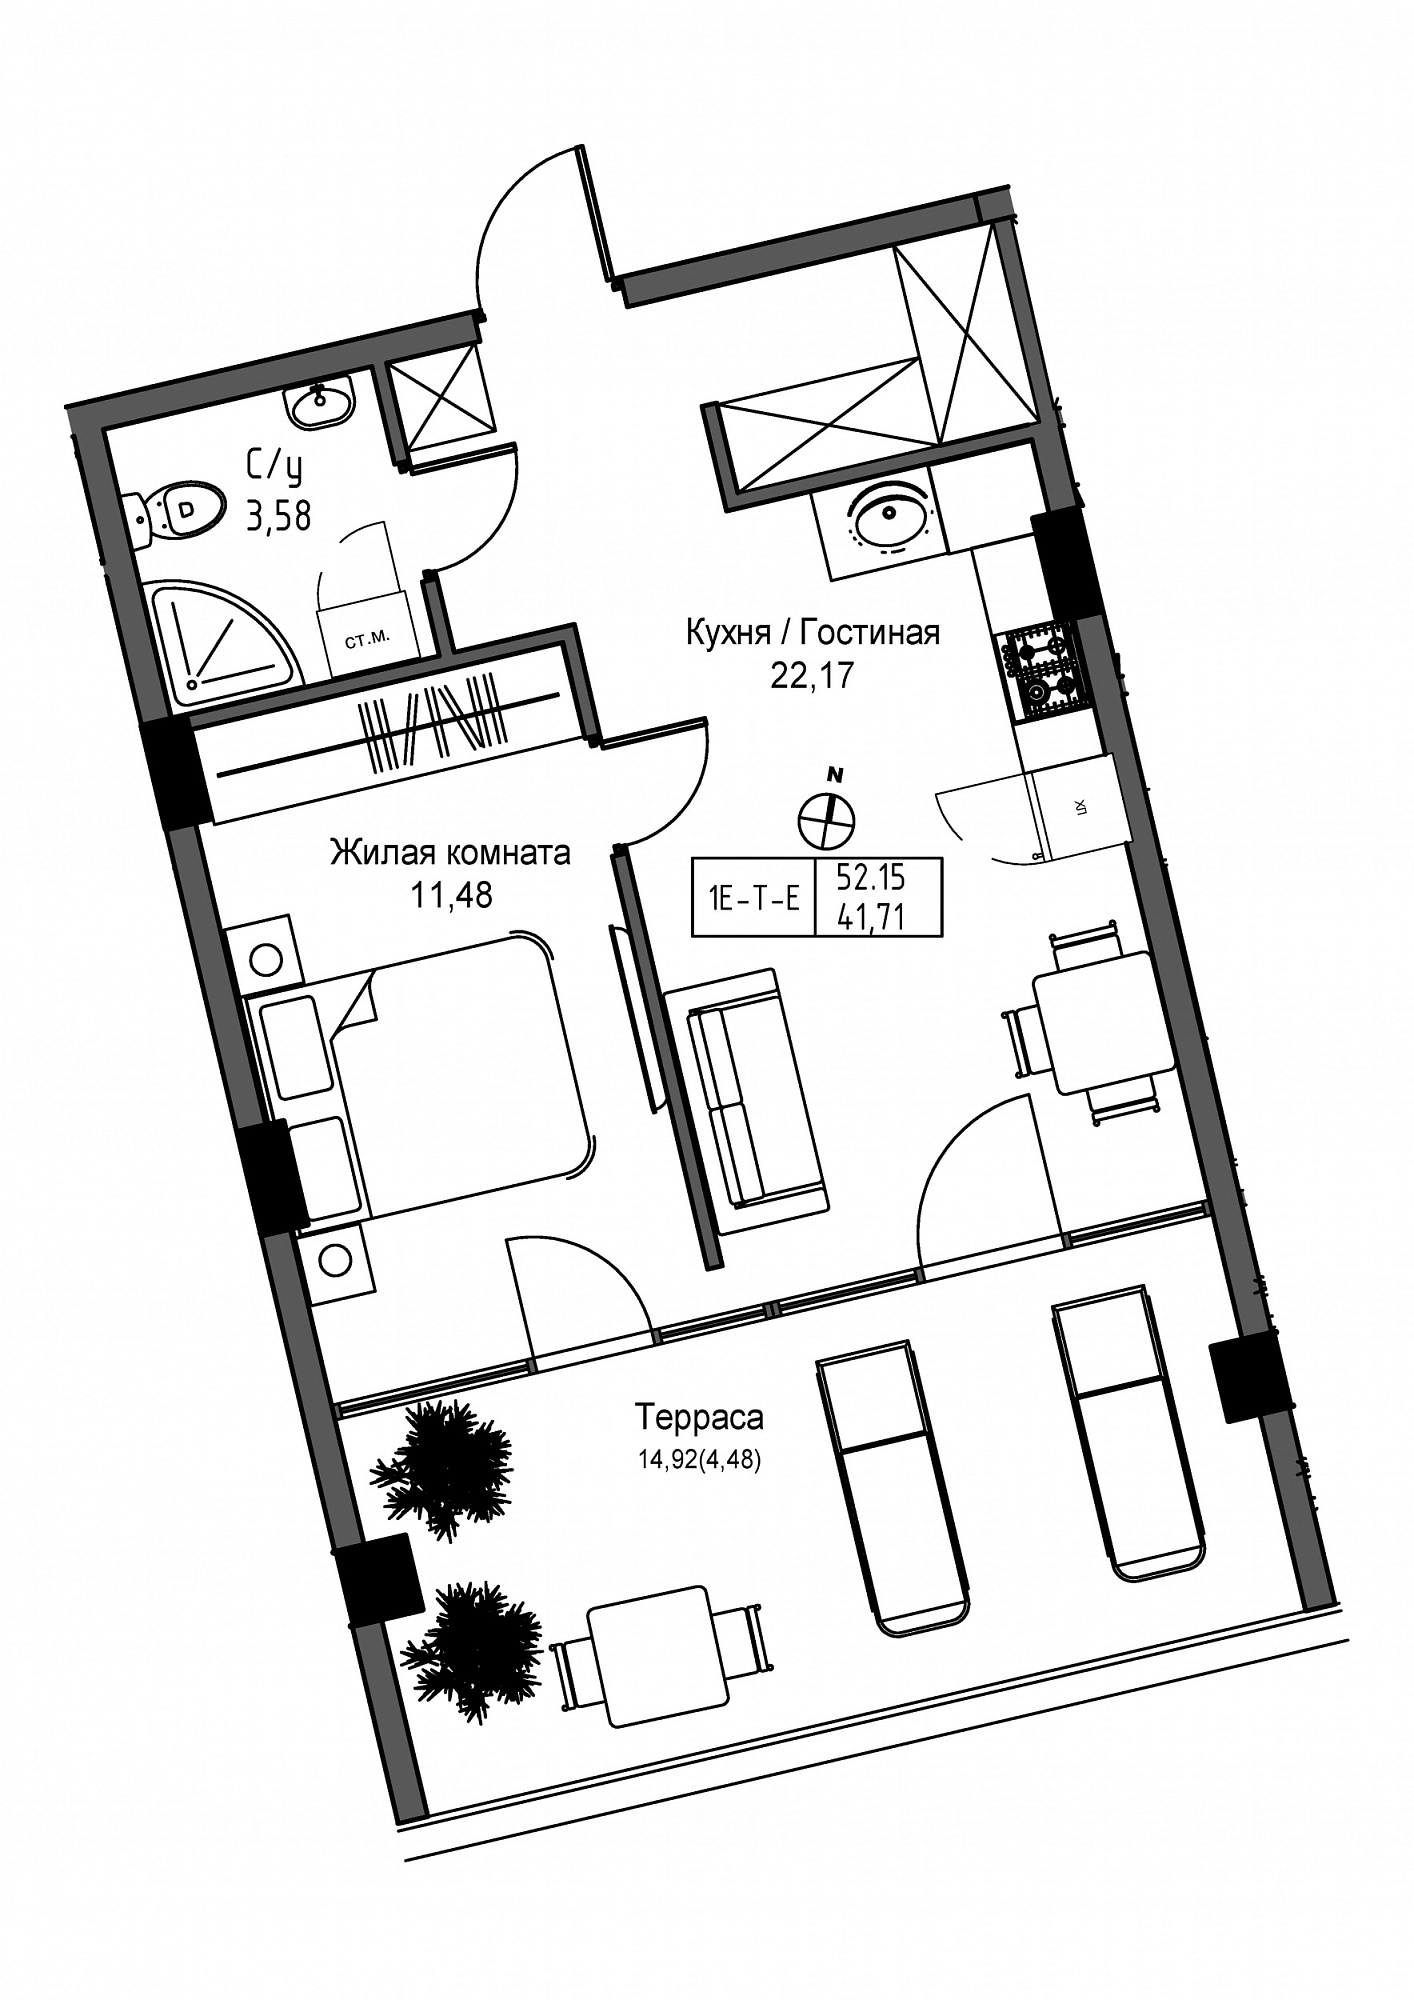 Планировка 1-к квартира площей 41.71м2, UM-004-03/0008.